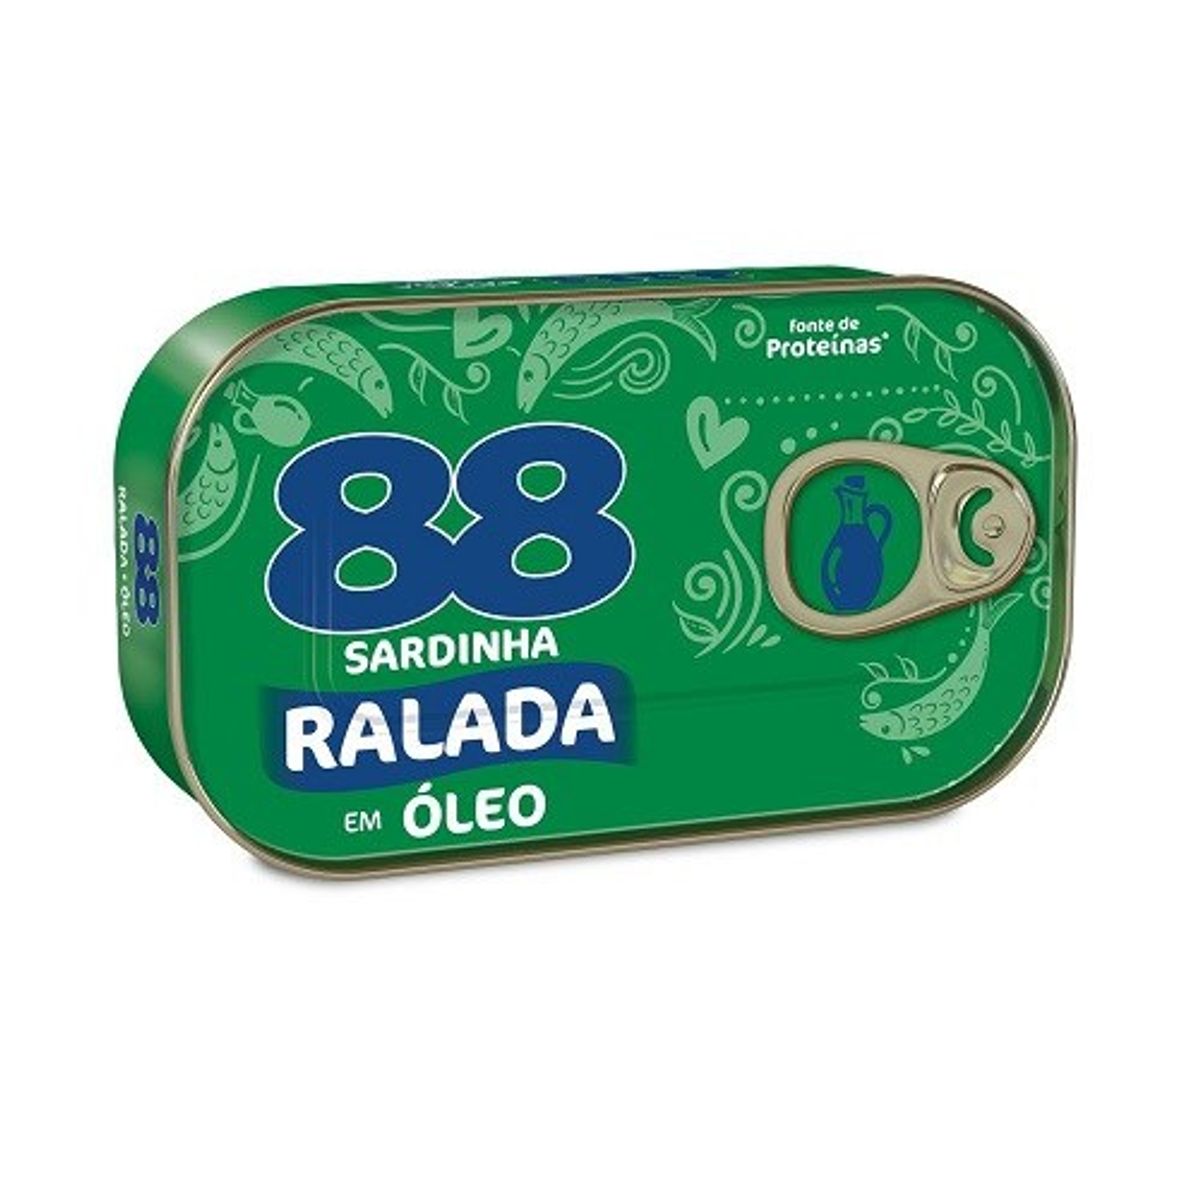 Sardinha 88 Ralada em Óleo 110g image number 0